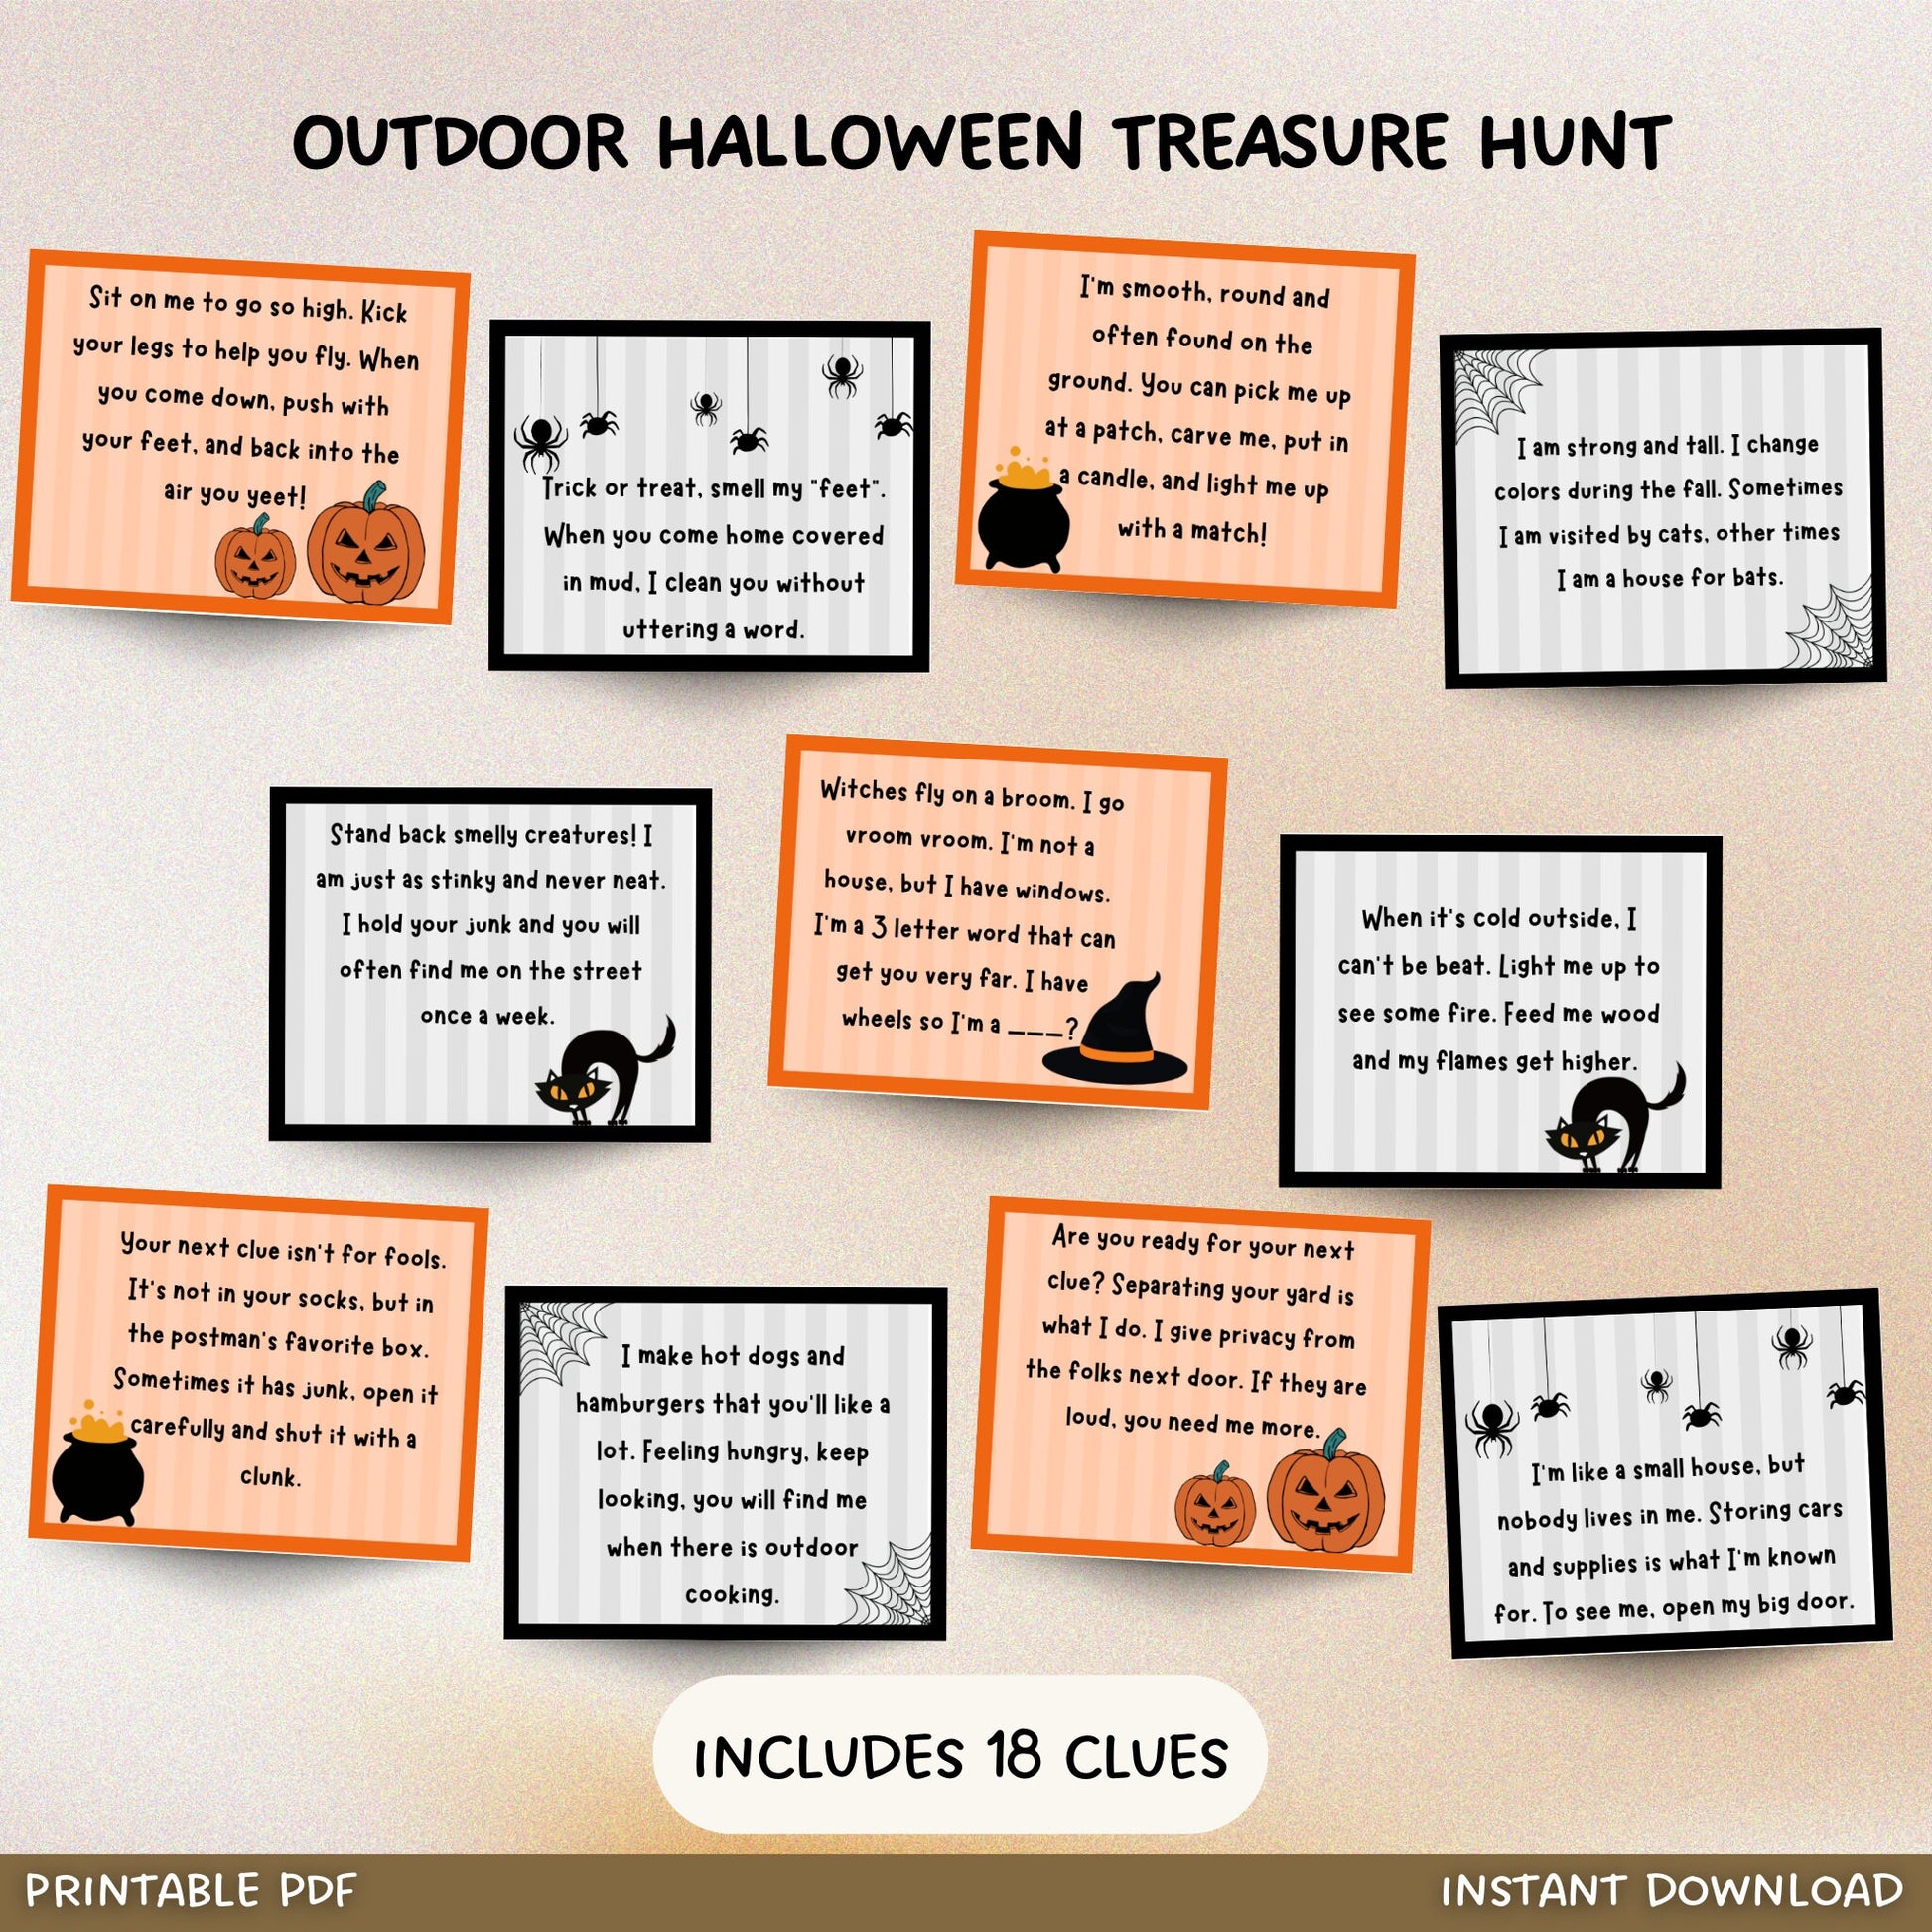 Outdoor Halloween Scavenger Hunt For Kids, Halloween Treasure Hunt Clues Printable, Kids Fun Halloween Activity, Halloween Party Games